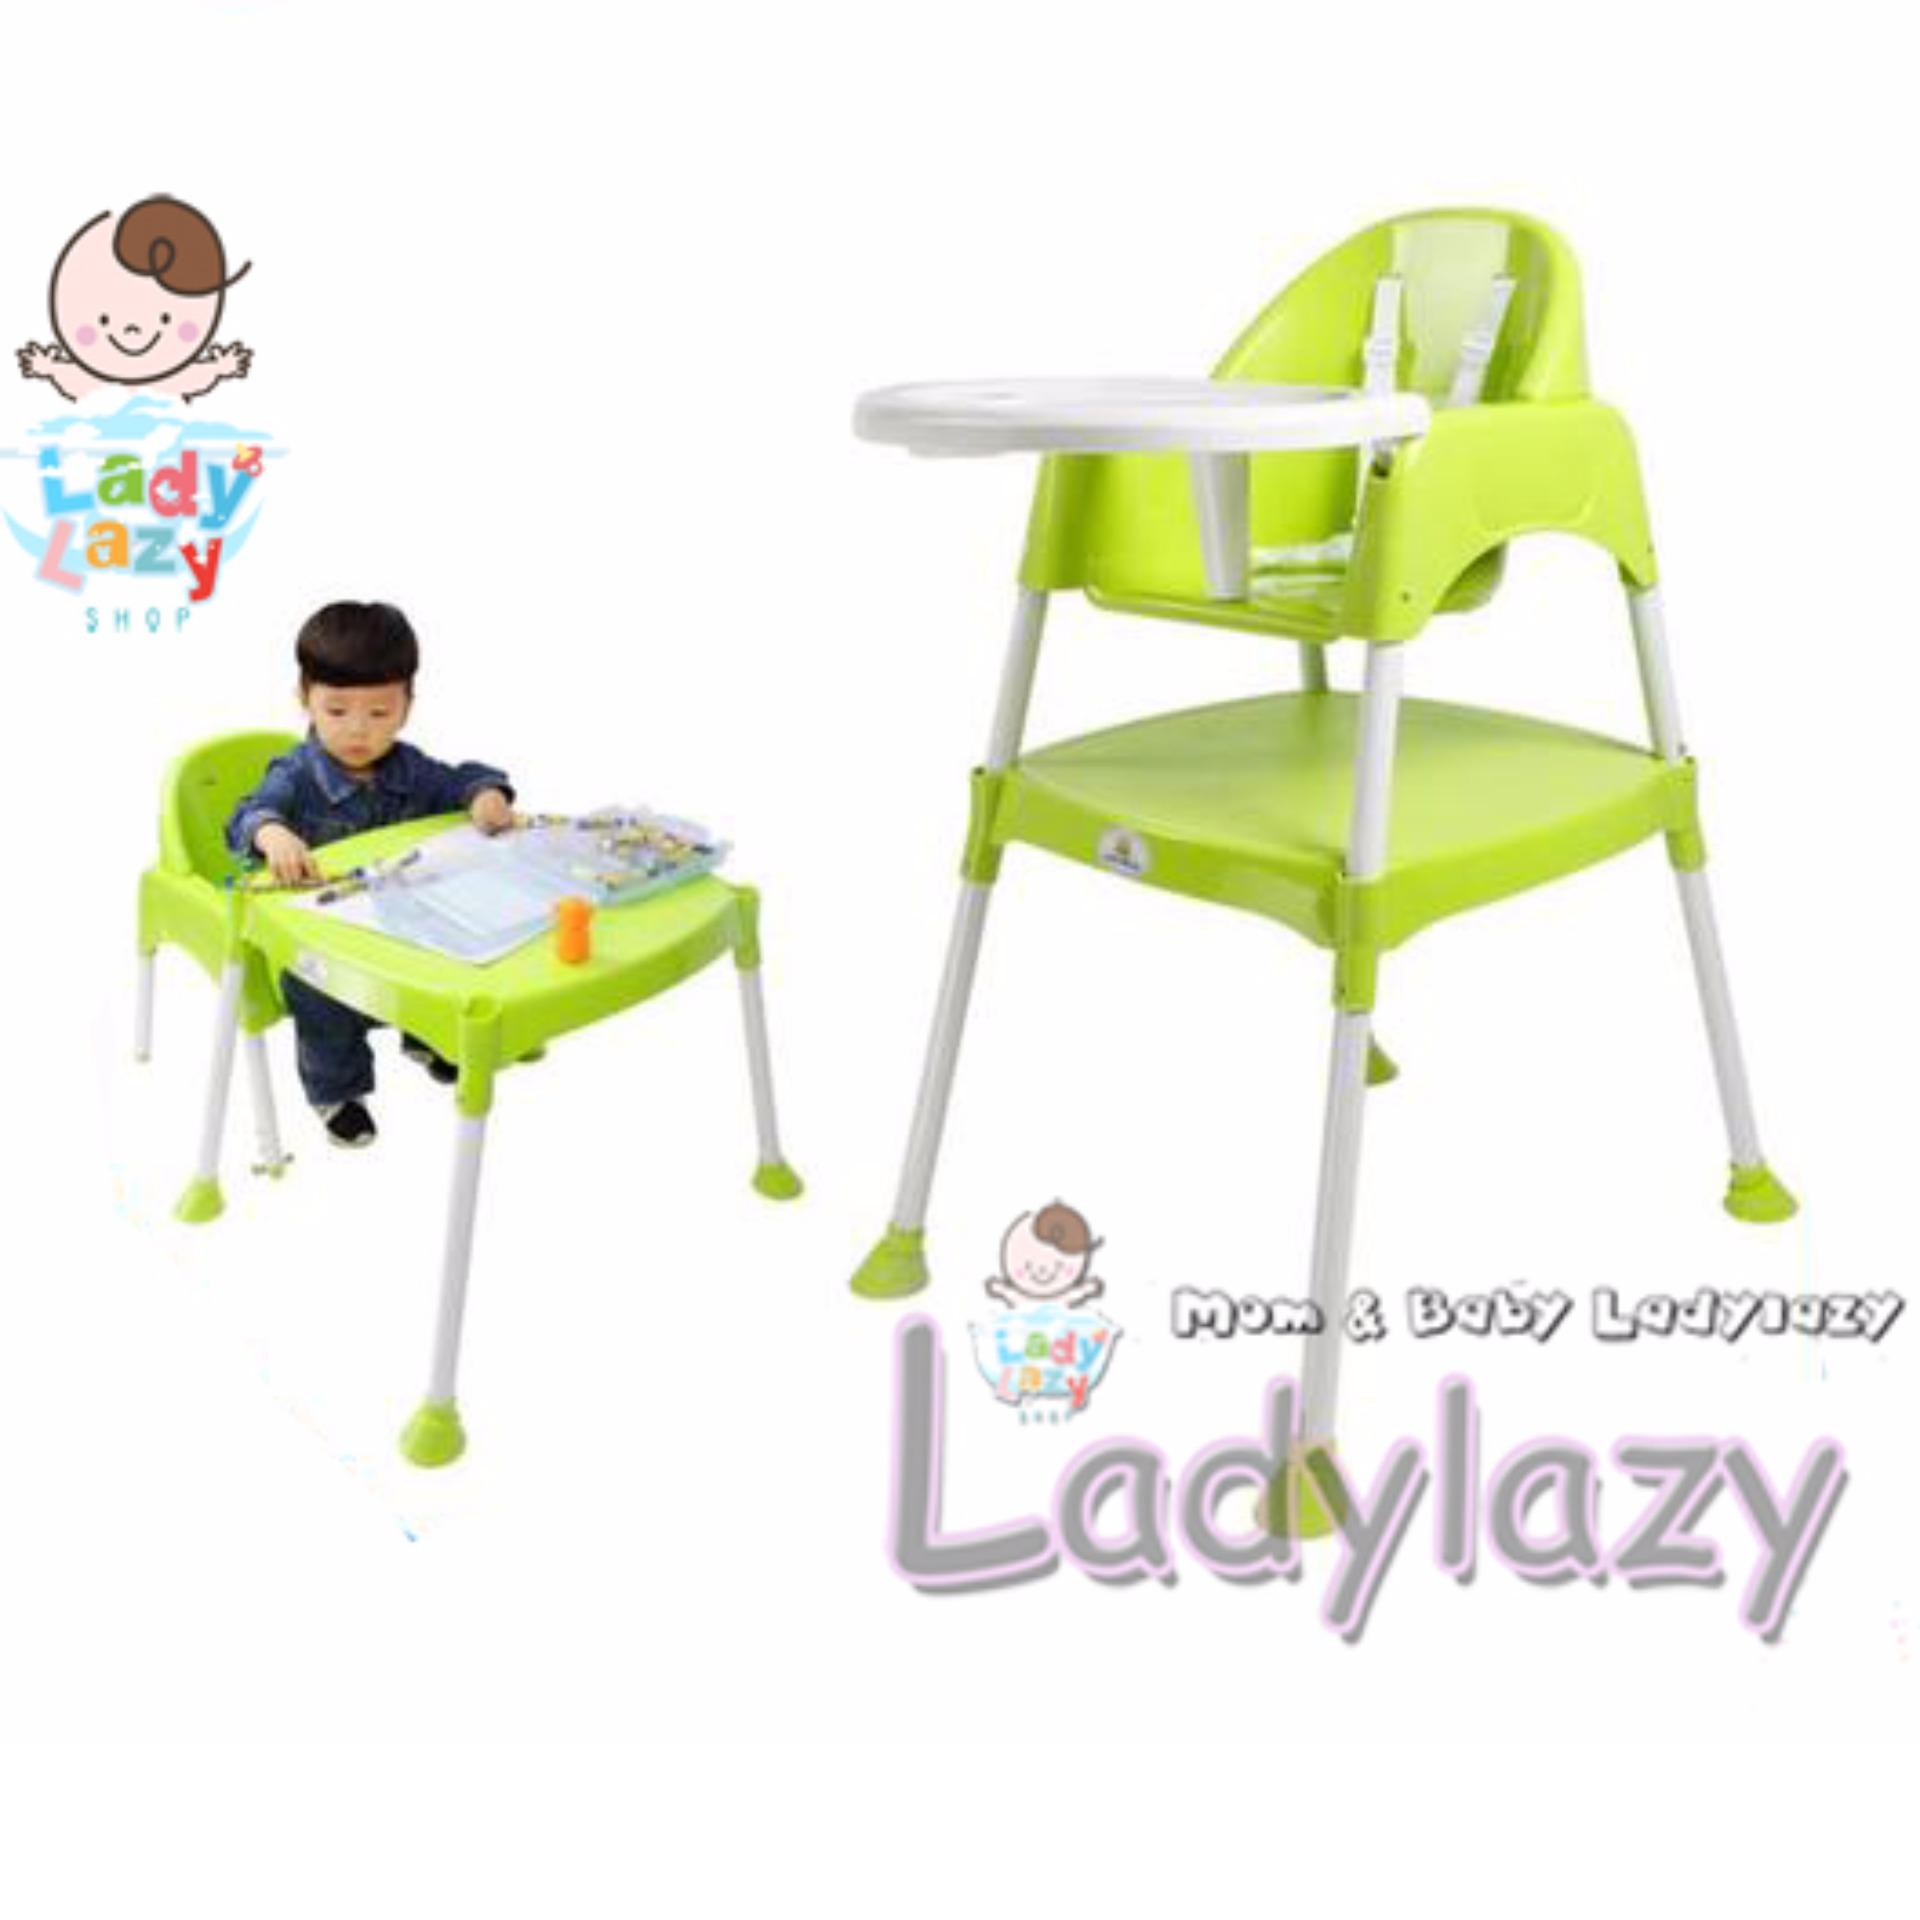 โปรโมชั่น Ladylazy โต๊ะเก้าอี้กินข้าวเด็กทรงสูง 3in1 สีเขียว